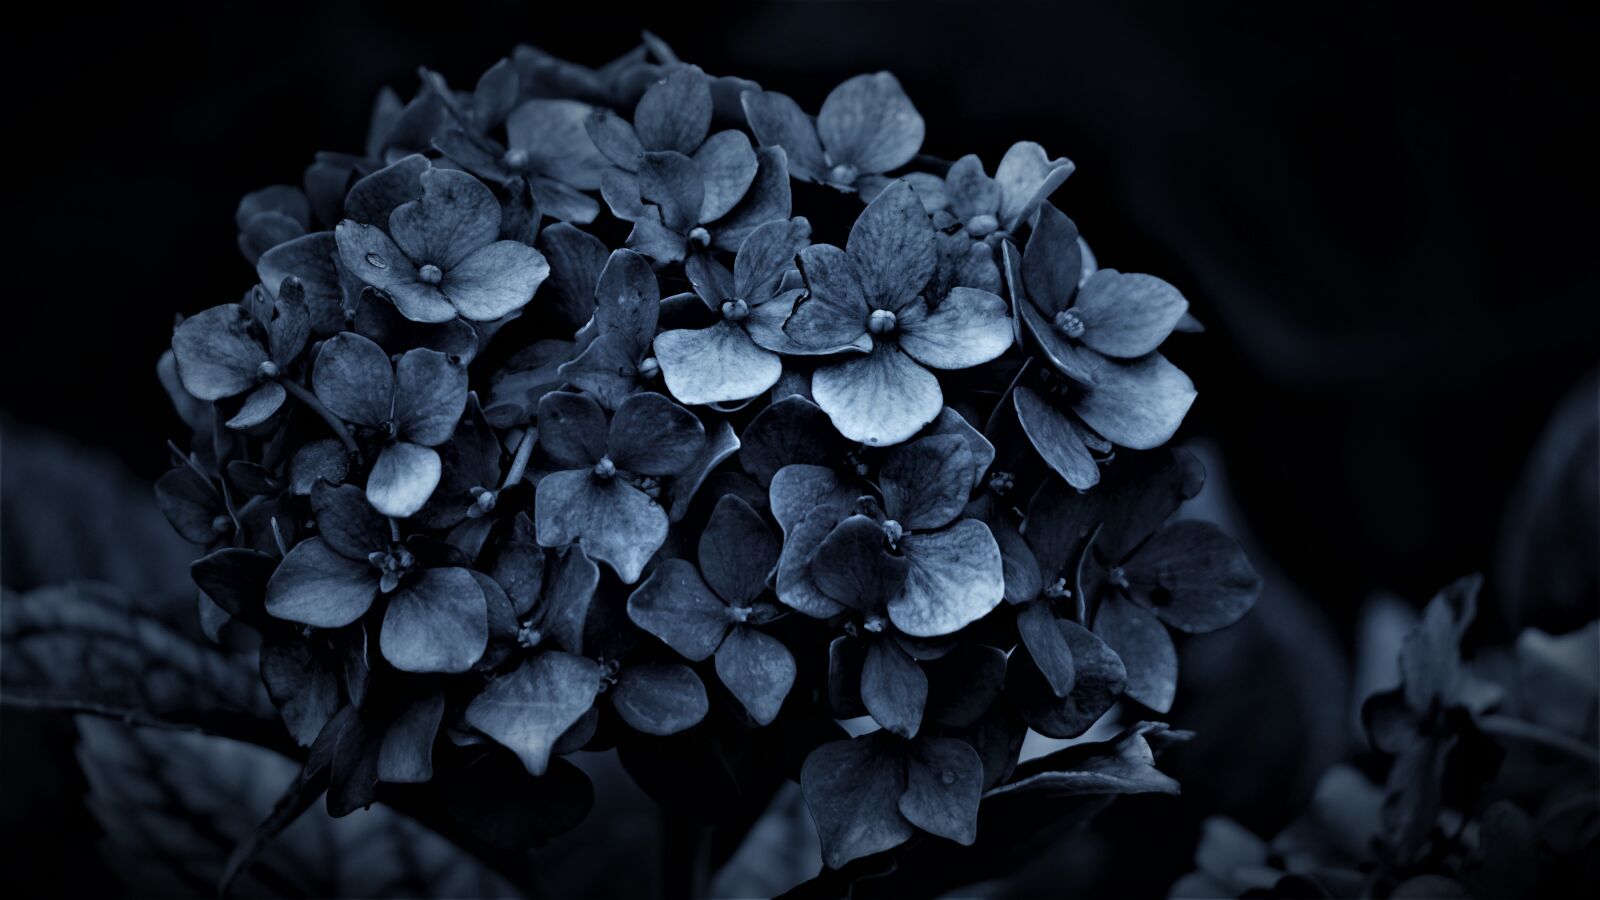 Sony E 70-350mm F4.5-6.3 G OSS sample photo. Hydrangea, dark, gloomy photography